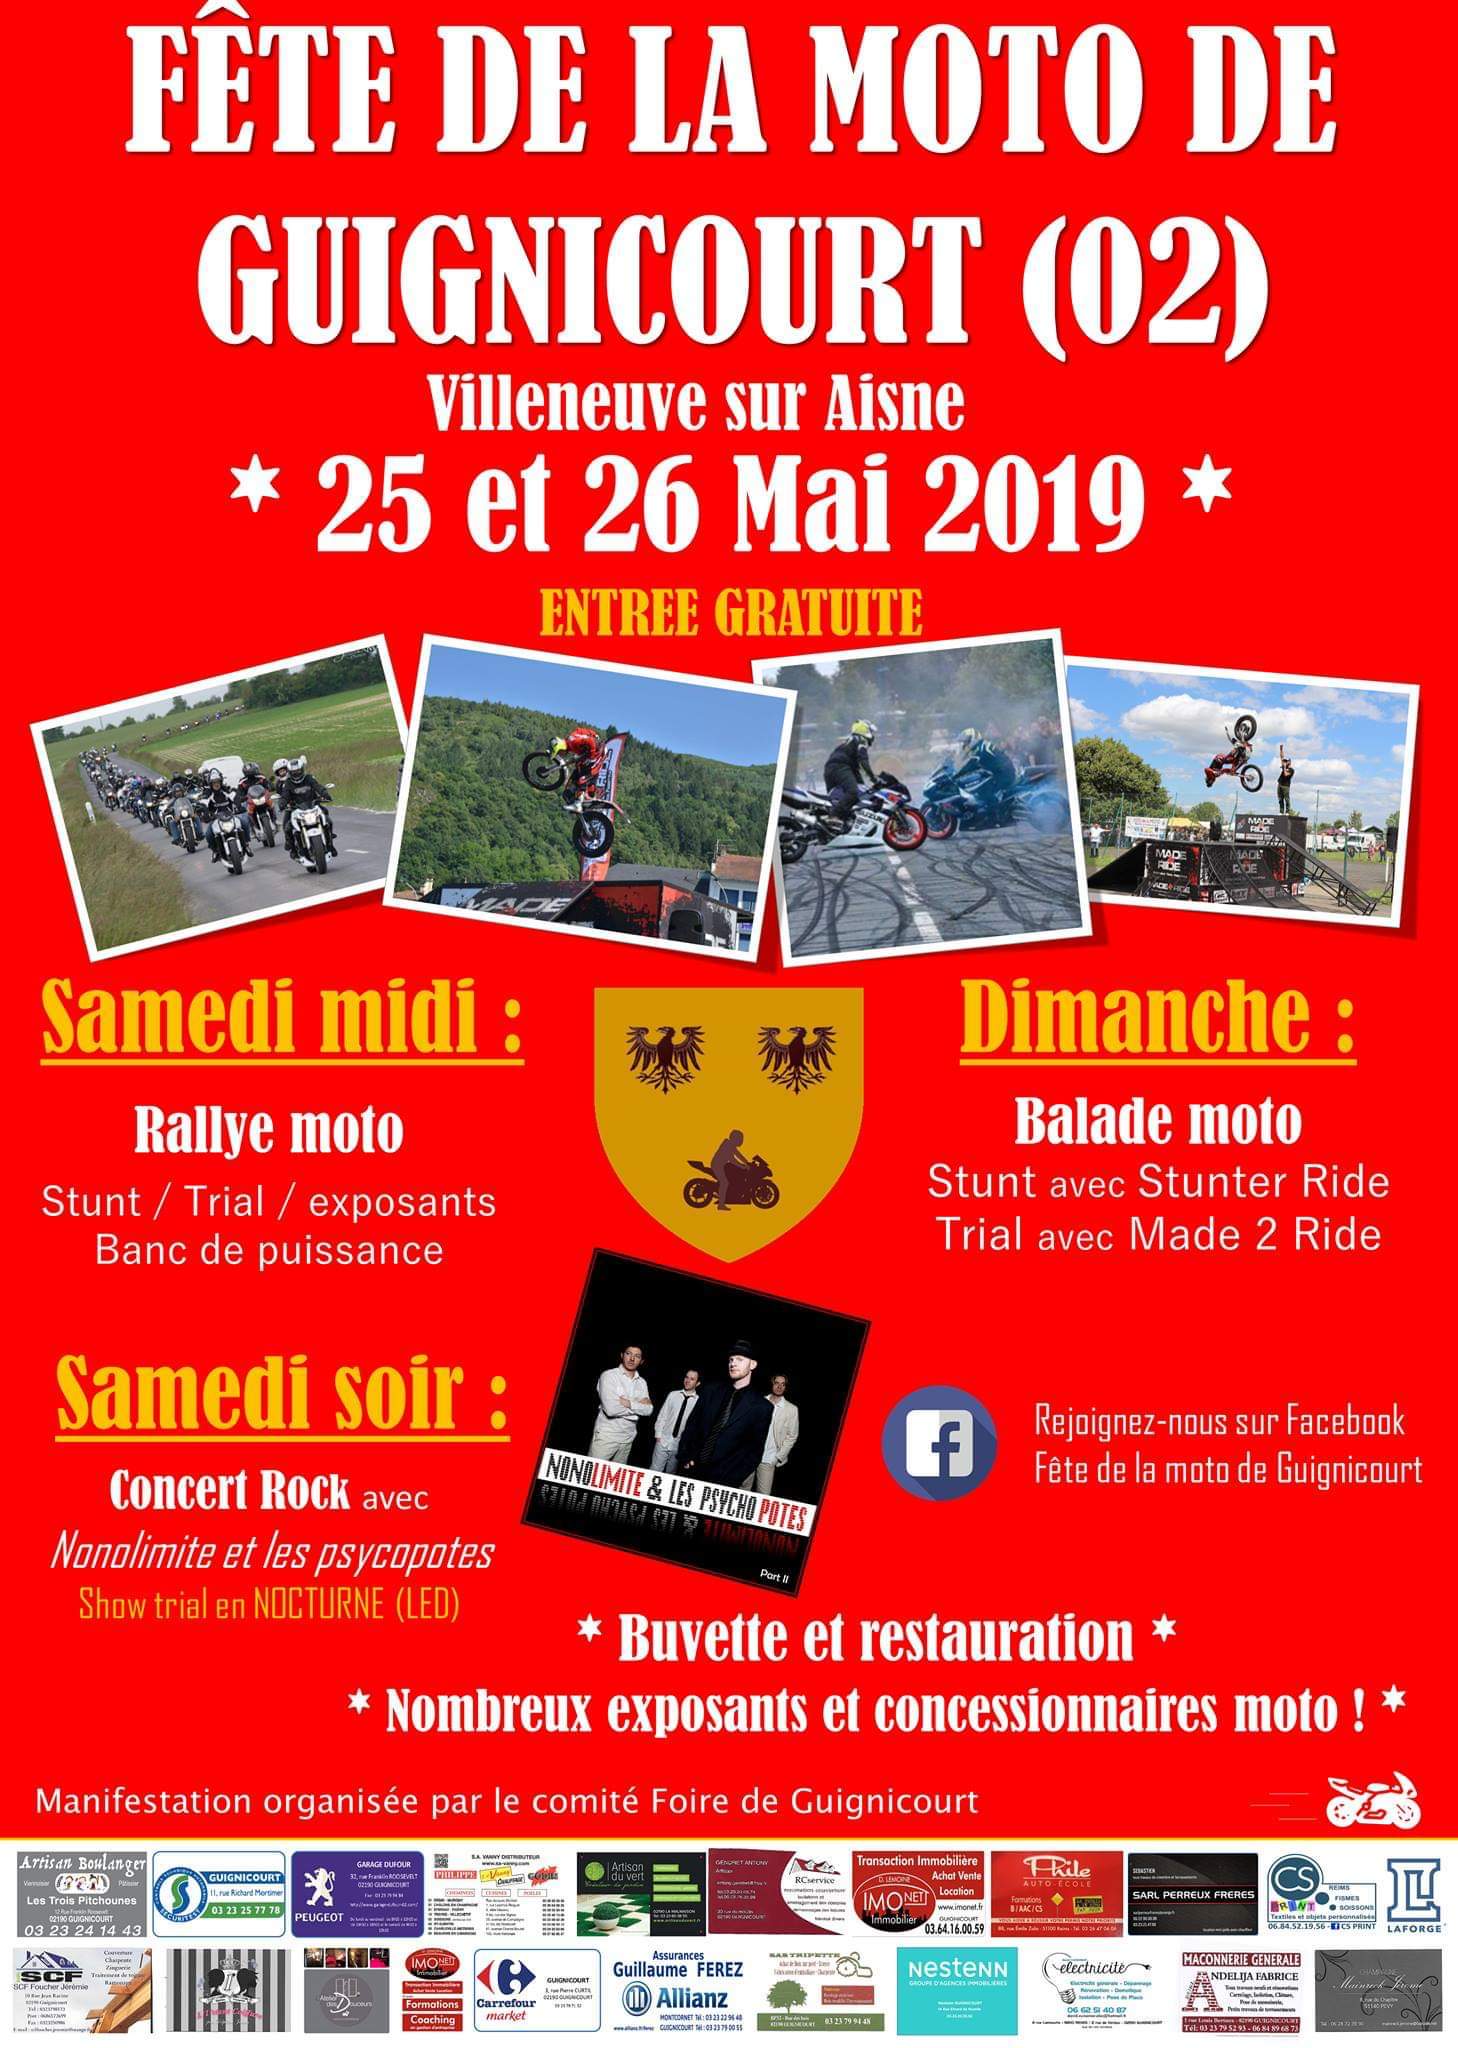 25 & 26 Mai 2019 - Fête de la moto à Guignicourt (02) Fb_img48